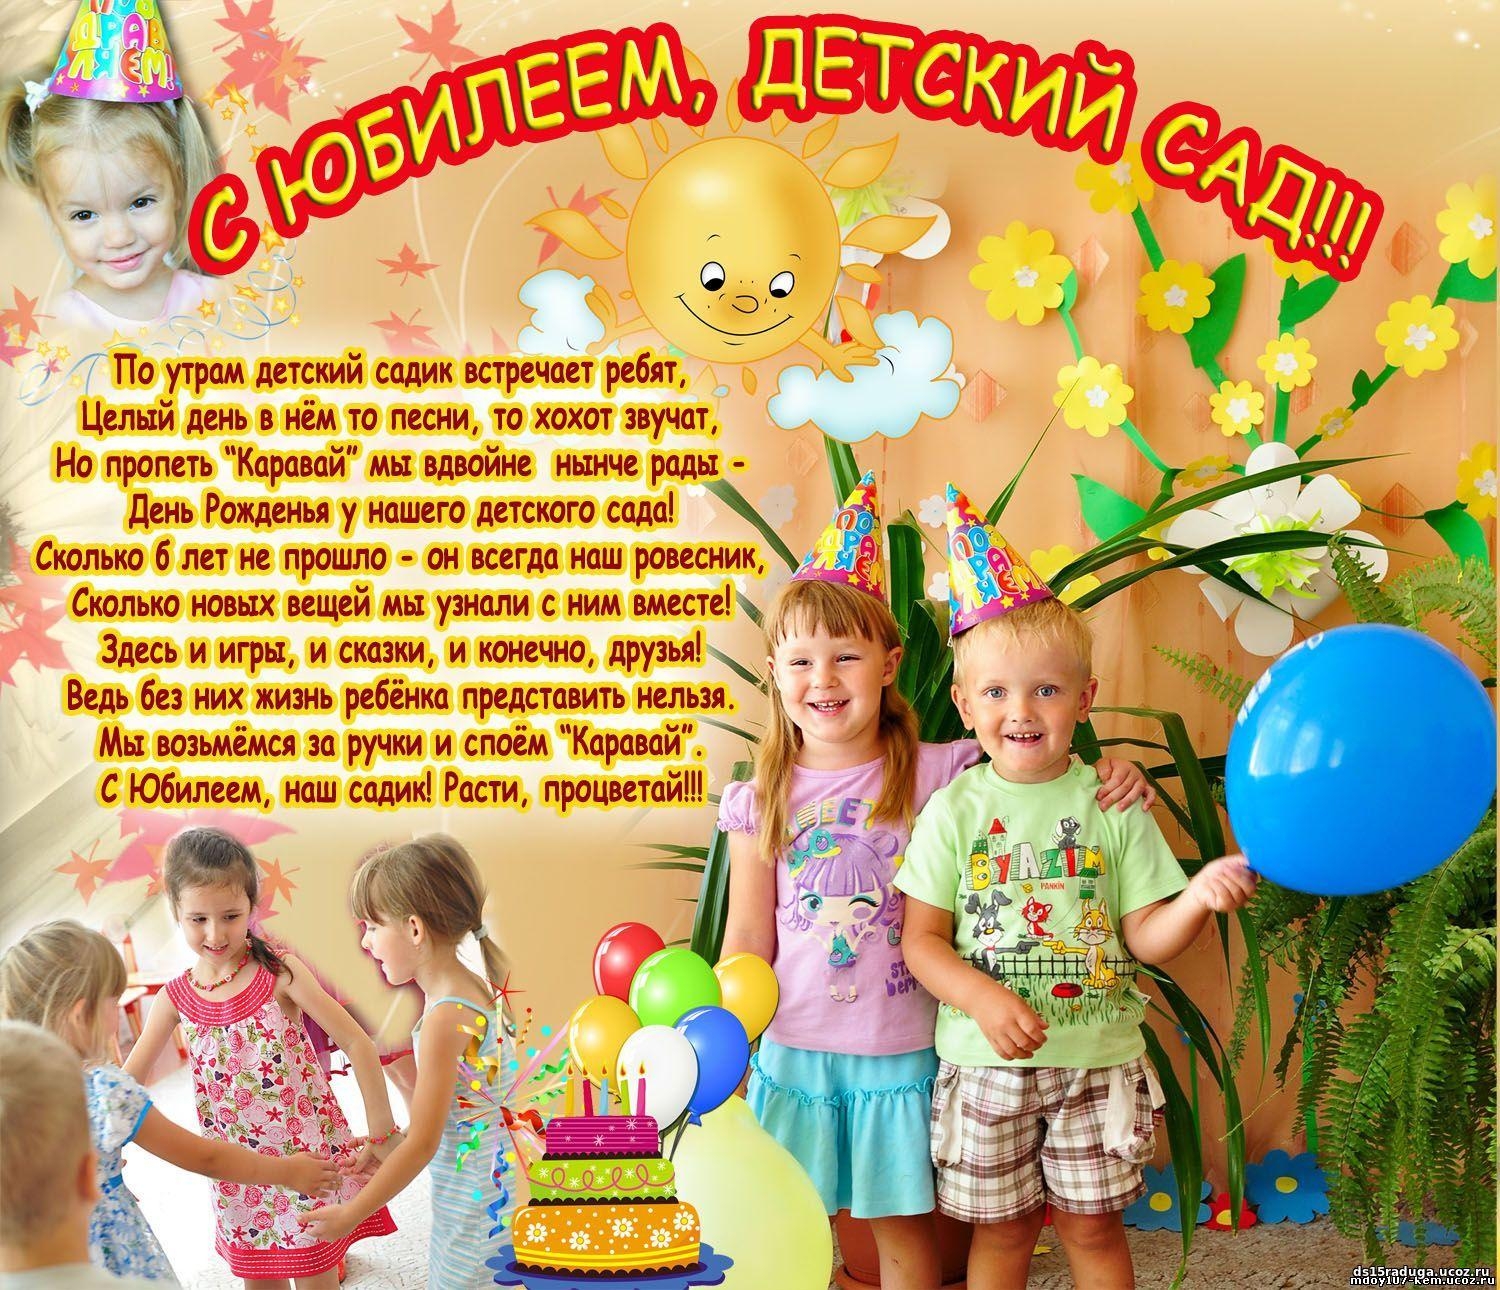 Поздравительная открытка с юбилеем детского сада (скачать бесплатно)